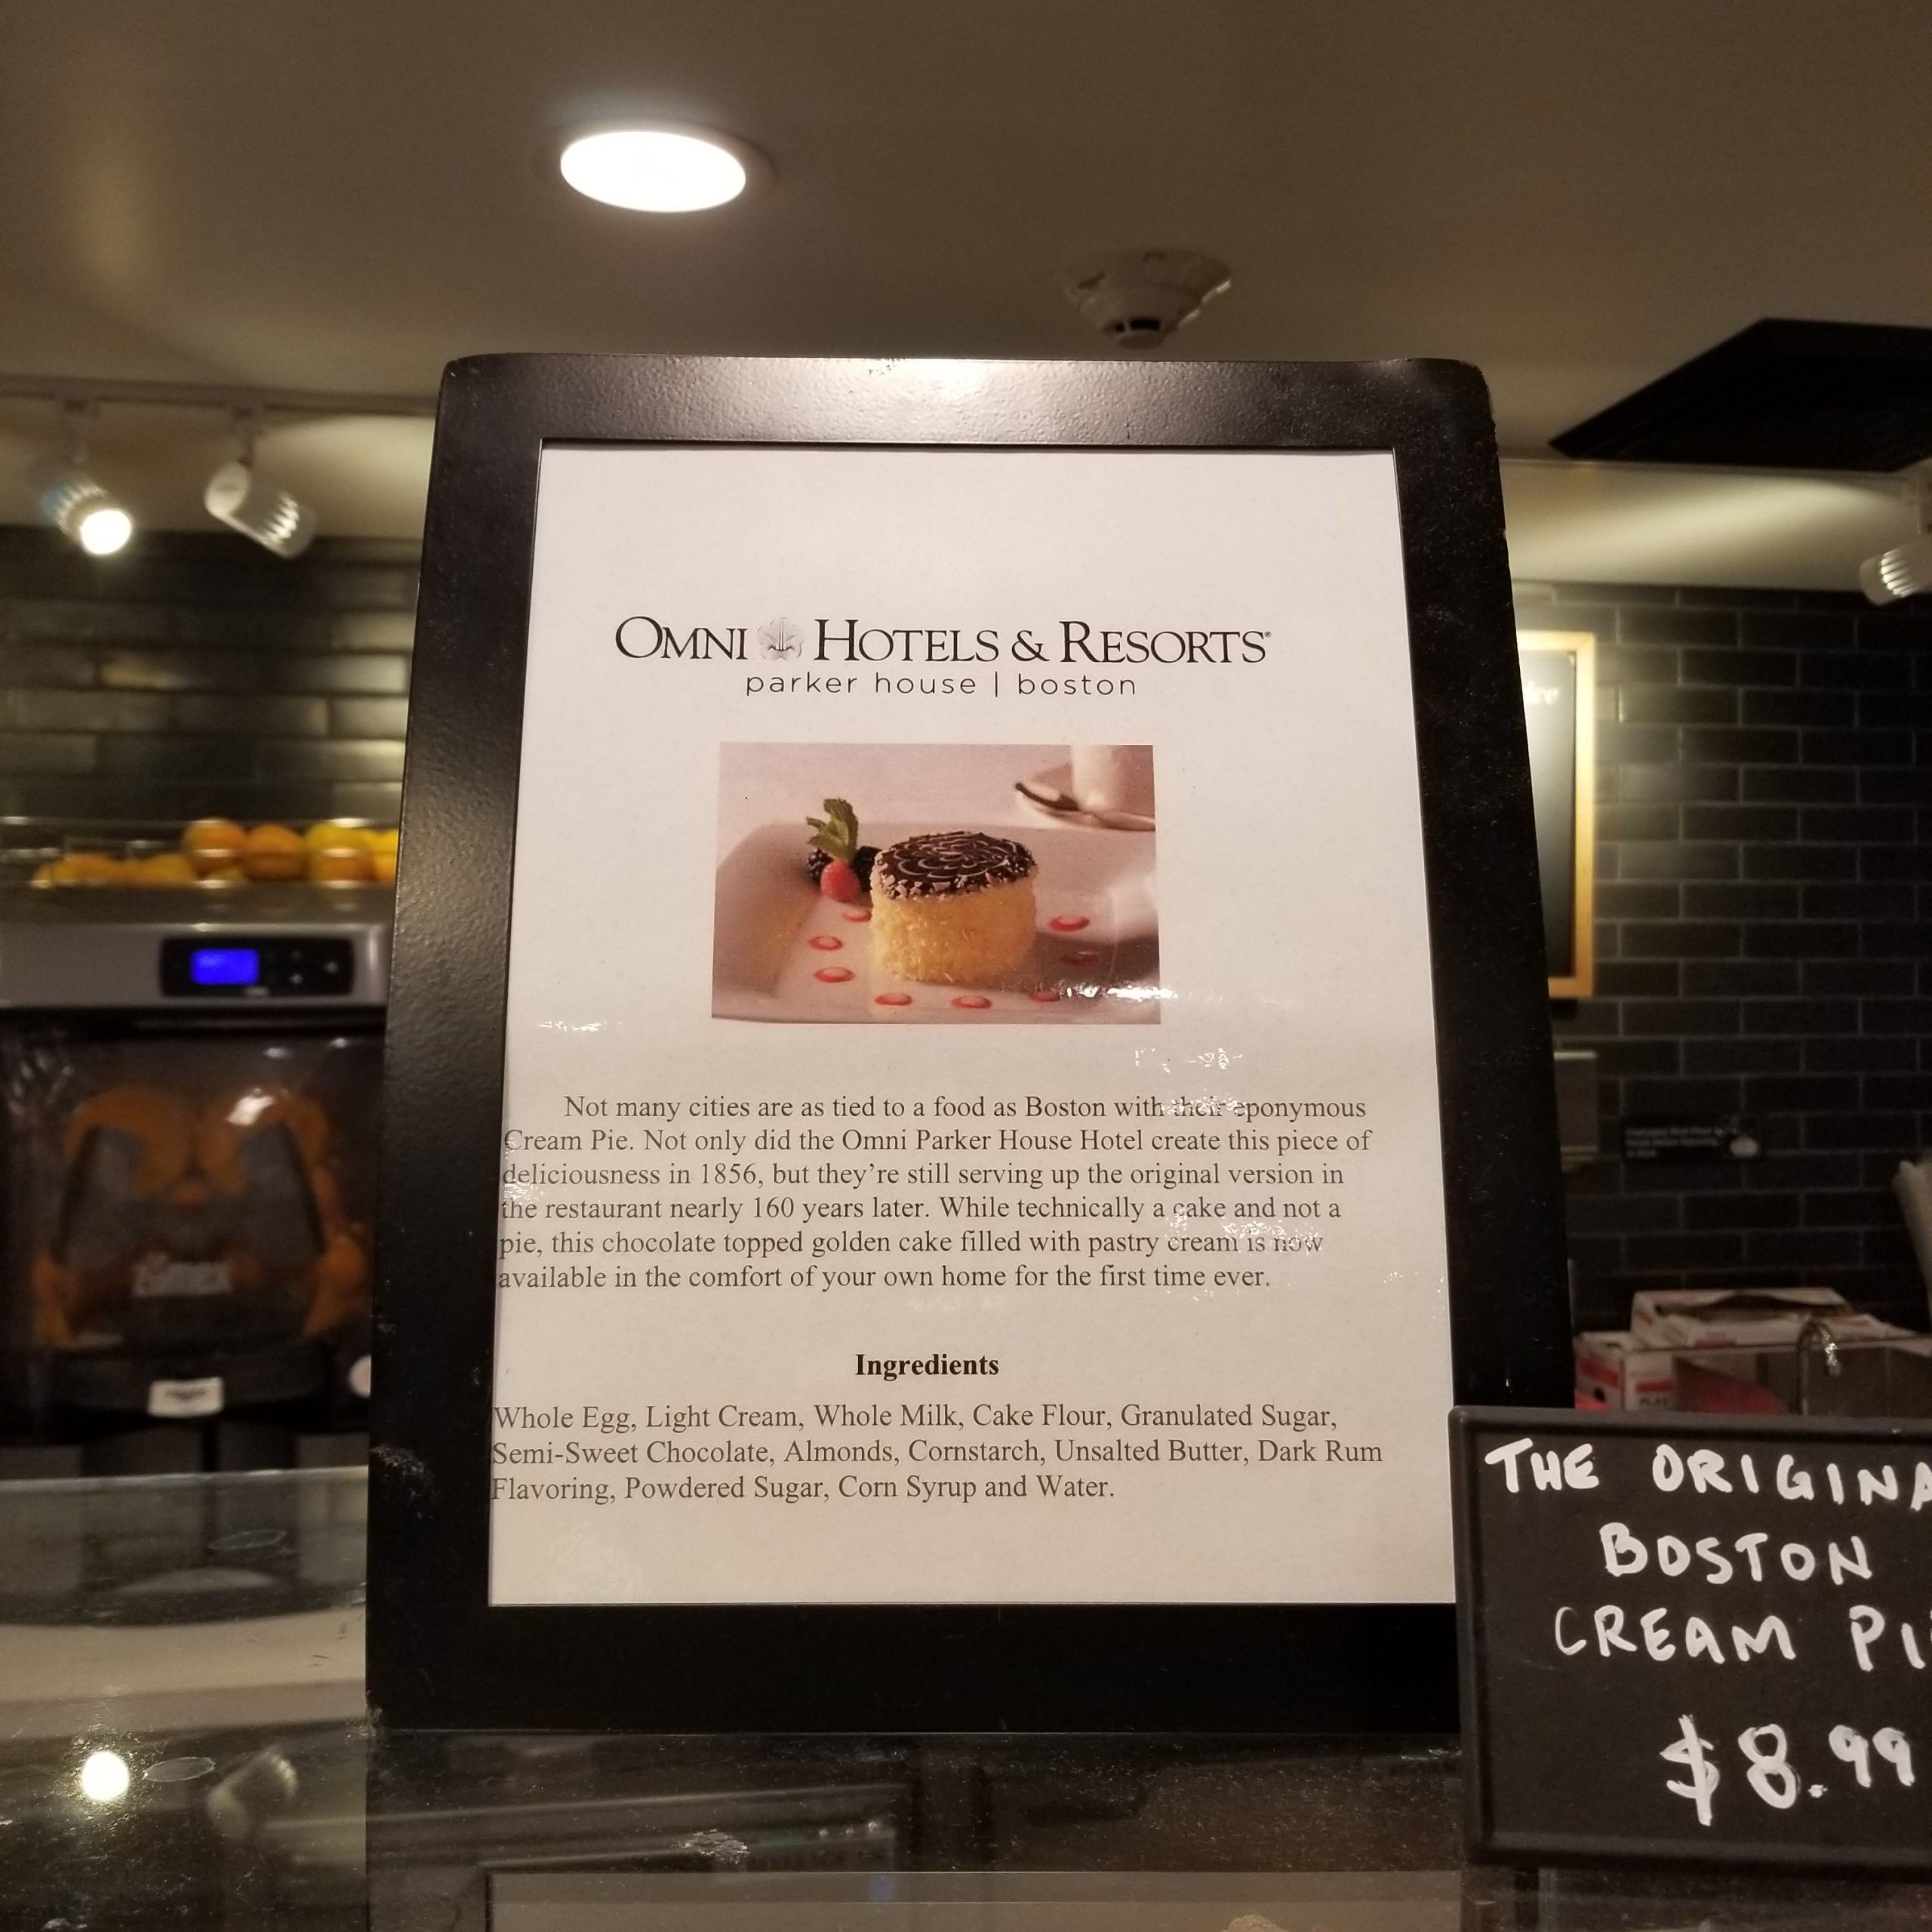 Omni Hotels was the original creator of the Boston Cream Pie